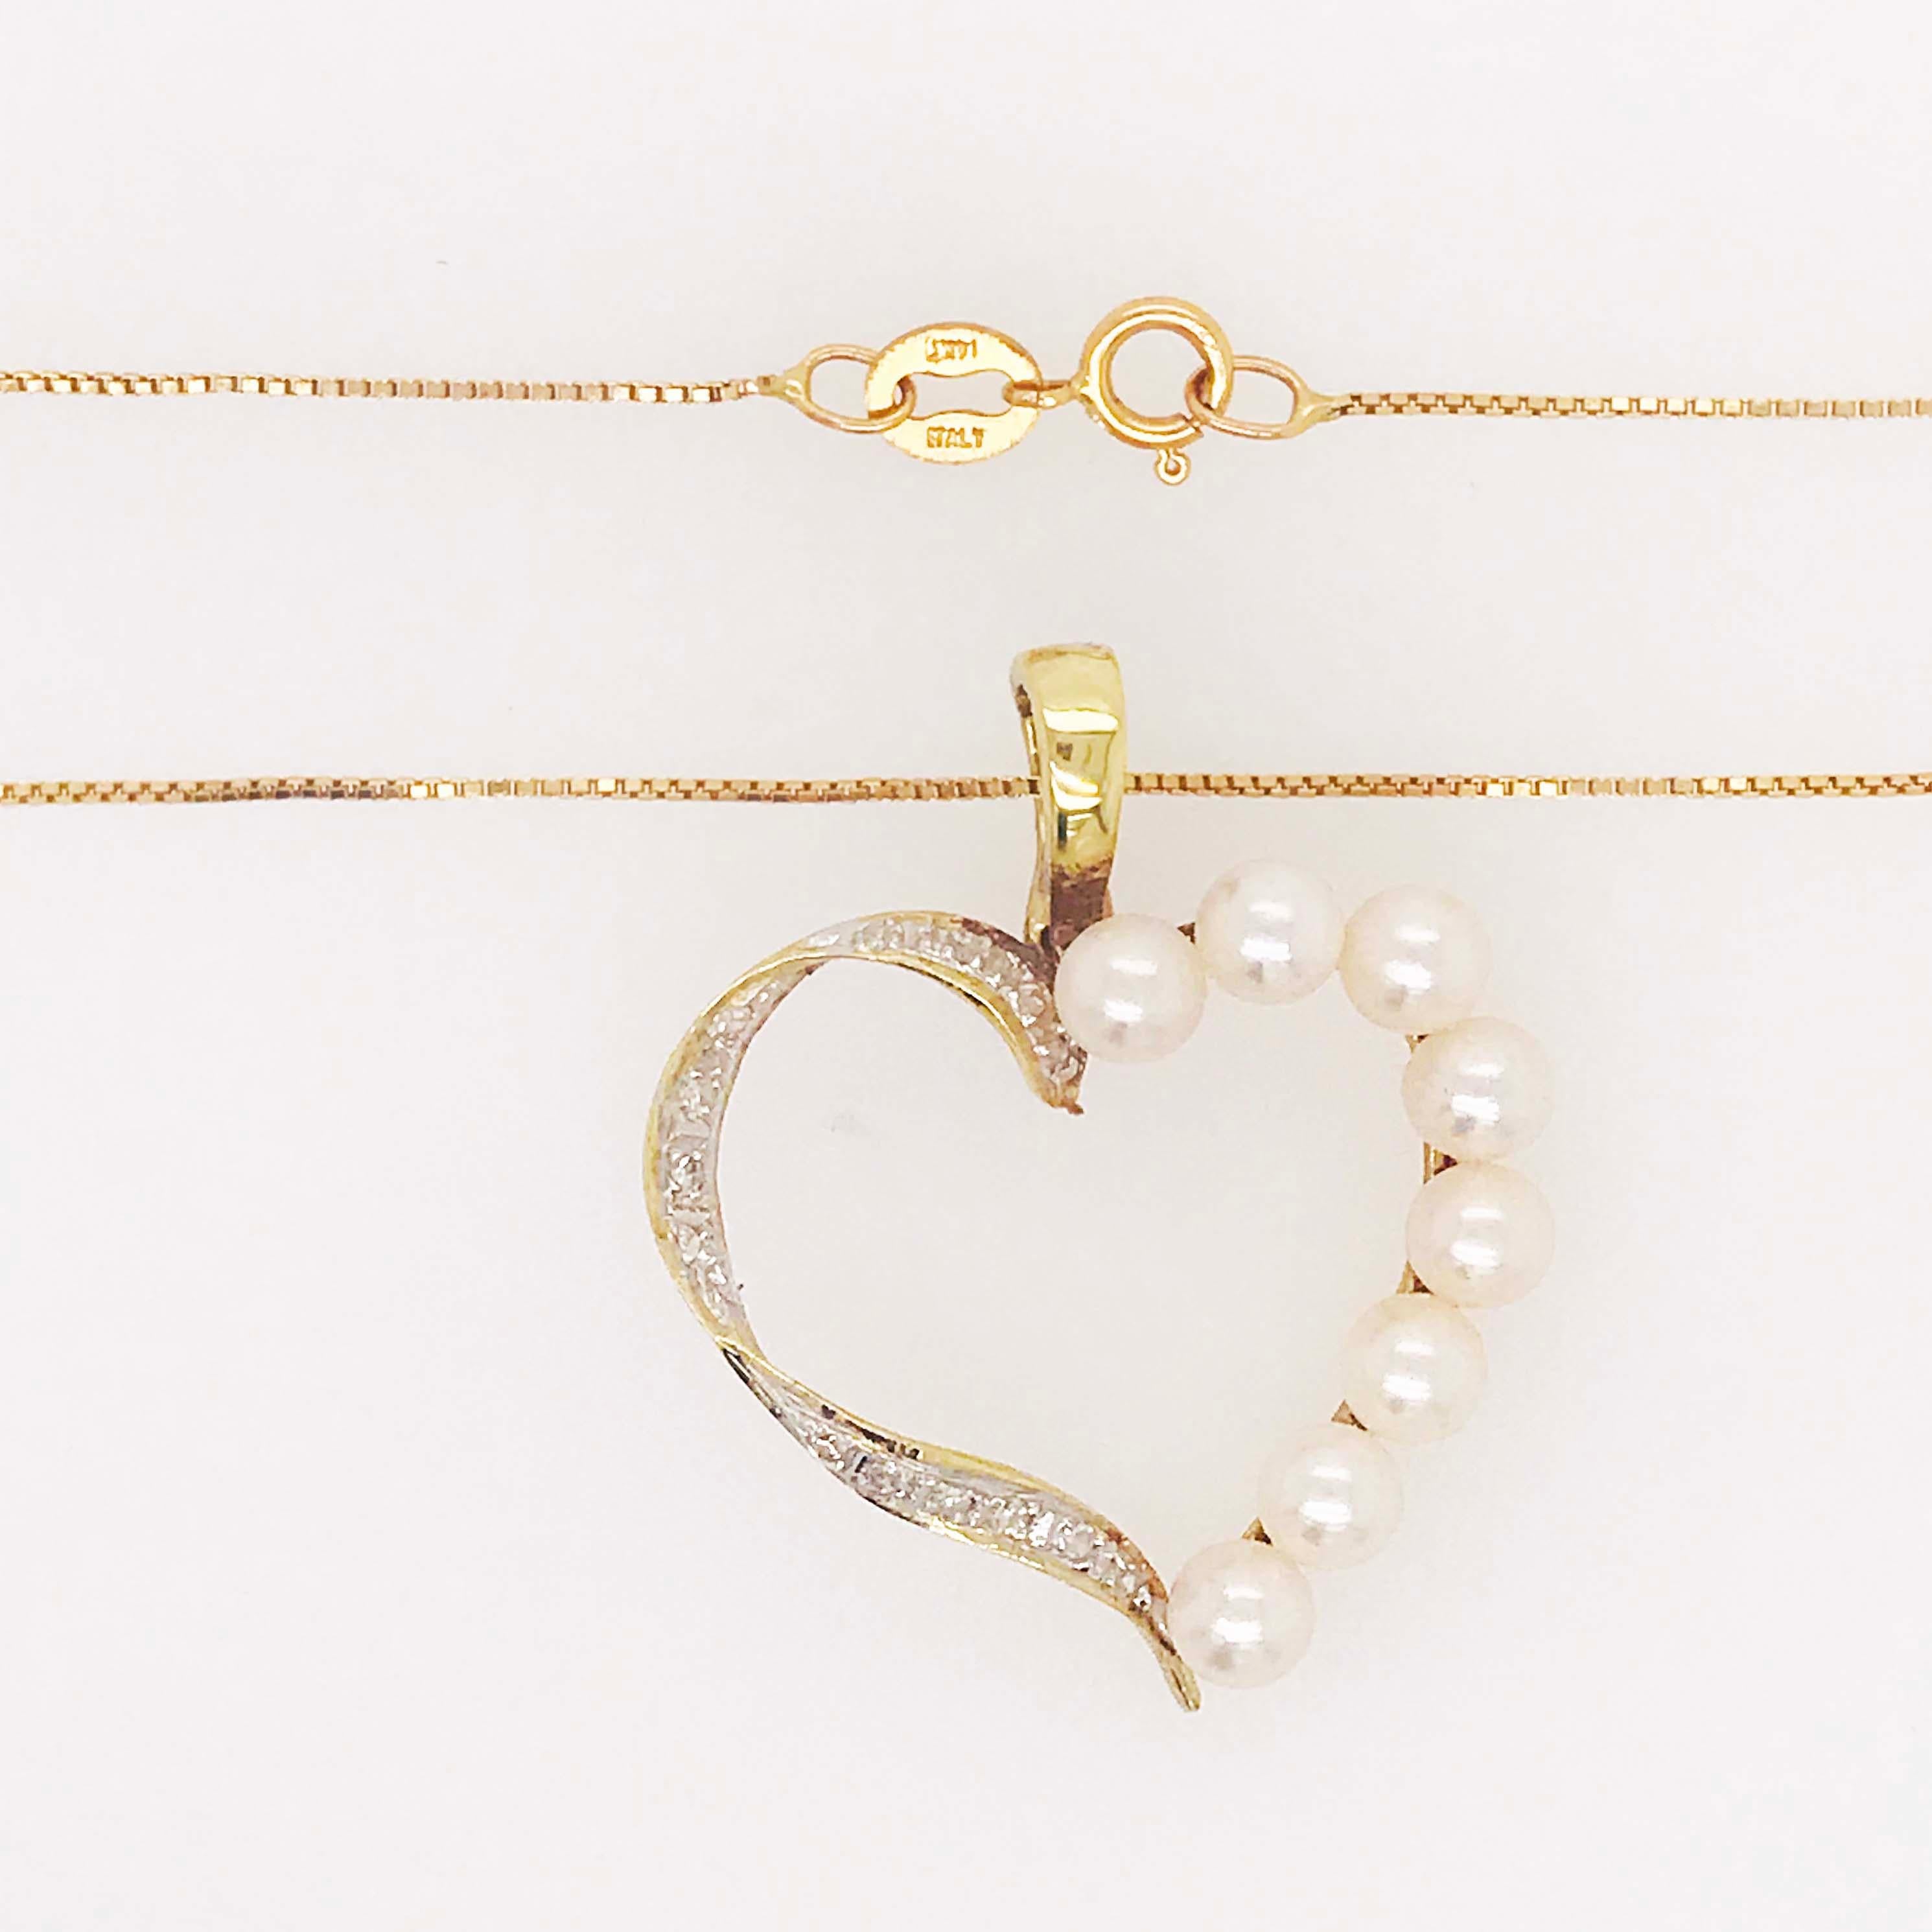 Diese wunderschöne Herz-Halskette aus echten Diamanten und Perlen ist so süß! Der herzförmige Halskettenverstärker hat ein offenes Design mit Diamanten, die die linke Seite des Herzens bedecken. Die Diamanten sind oben auf einem bandähnlichen Muster